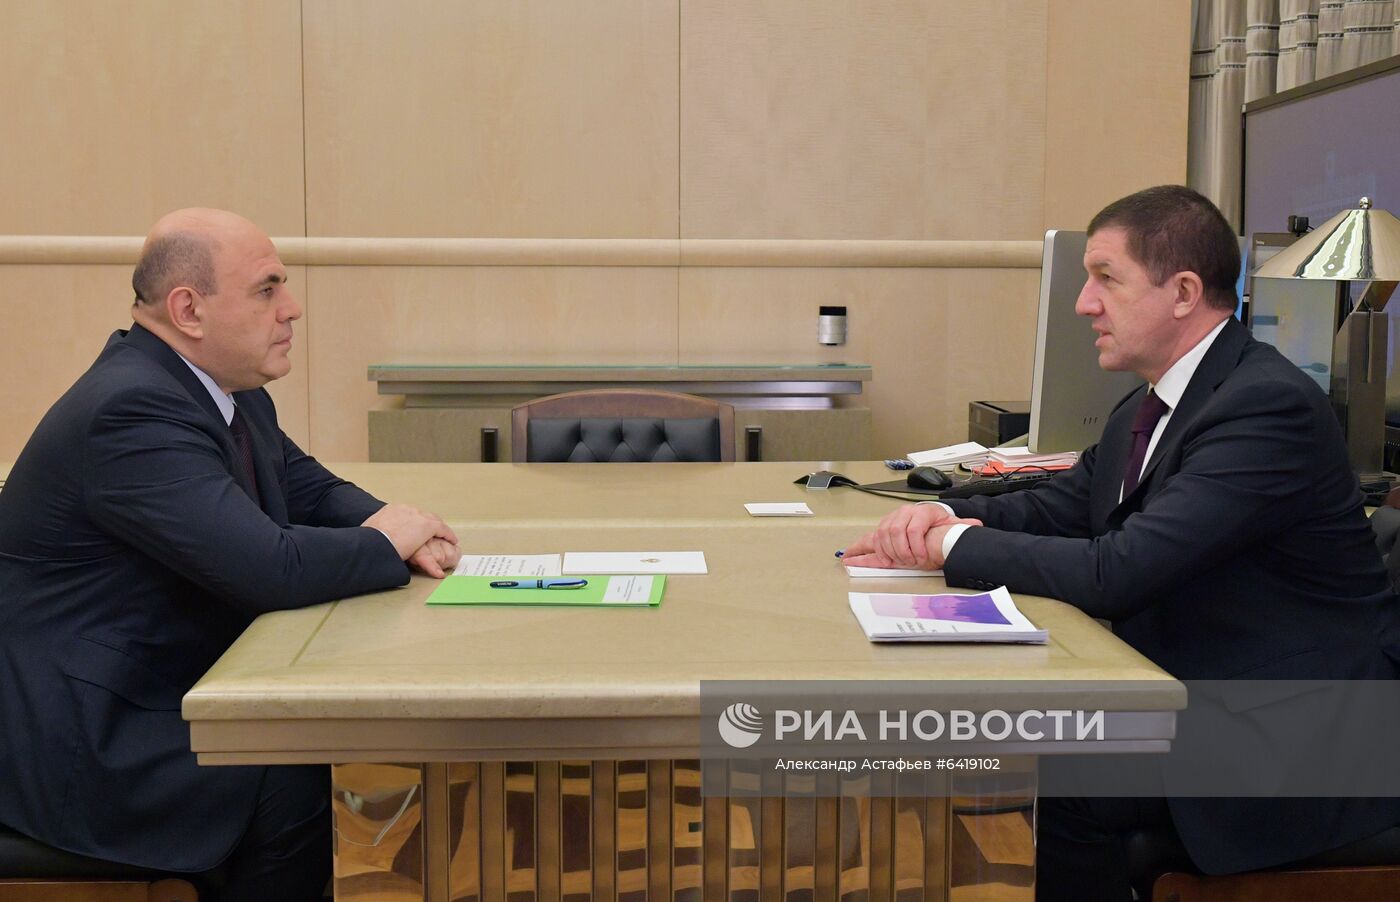 Премьер-министр РФ М. Мишустин встретился с президентом ПАО "Ростелеком" М. Осеевским